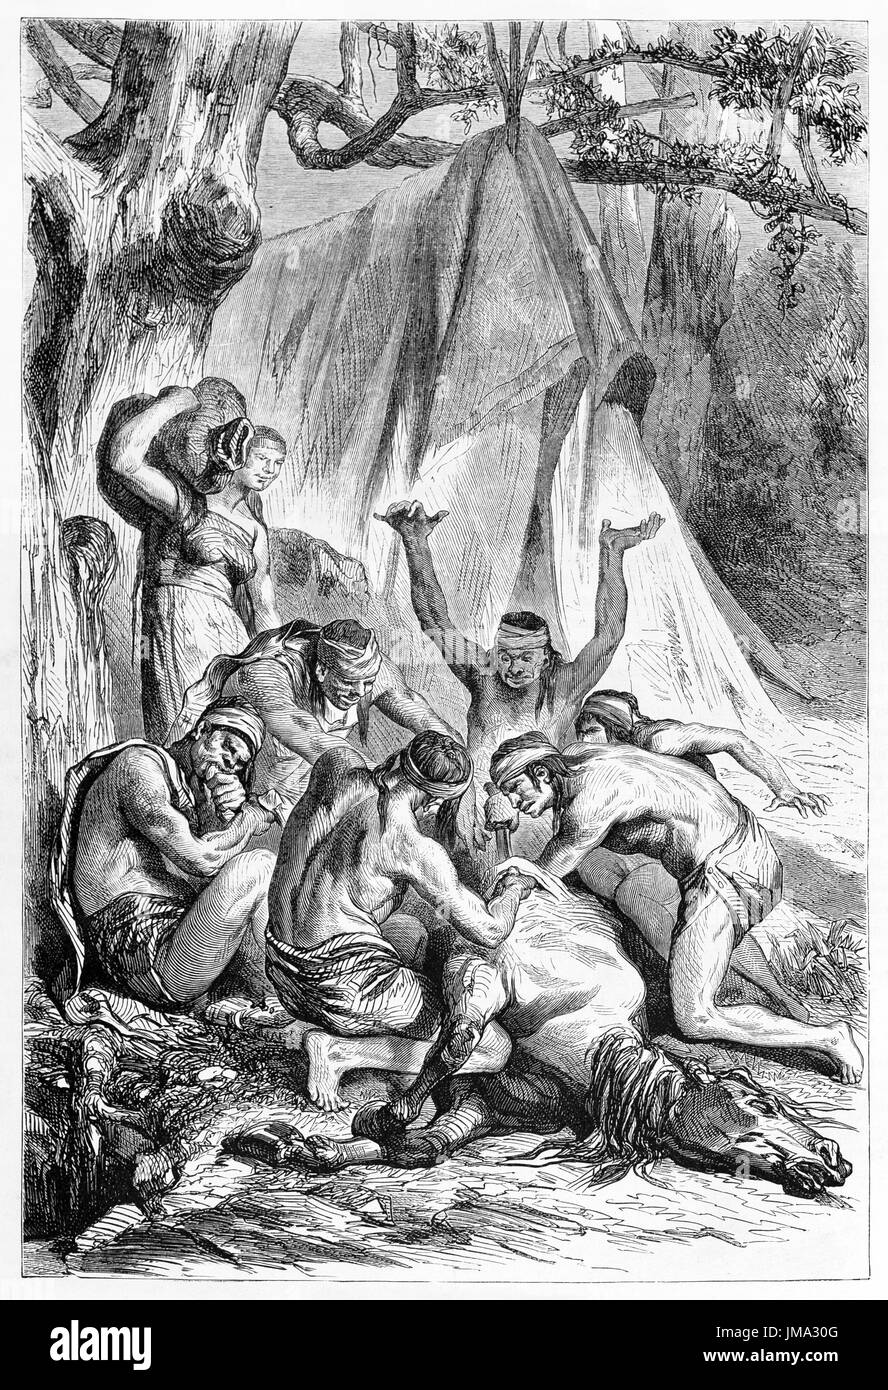 Vieille illustration du sacrifice rituel de Patagonie cheval par les autochtones. Créé par Castelli, publié sur le Tour du Monde, Paris, 1861 Banque D'Images